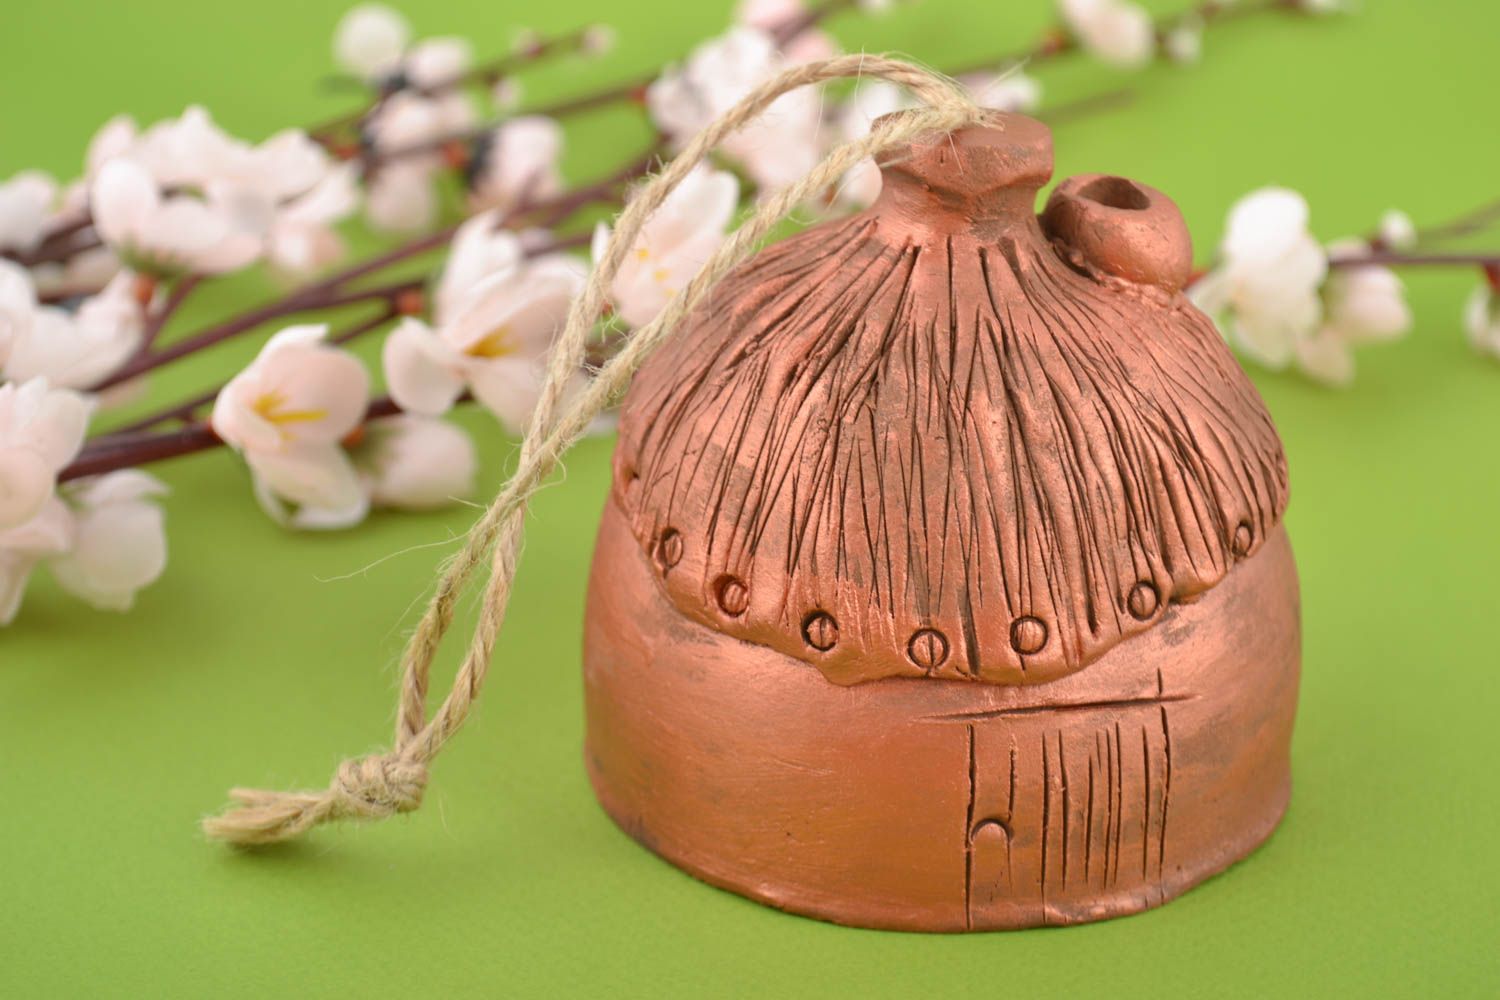 Расписной глиняный колокольчик в виде домика ручной работы на шнурке красивый фото 1